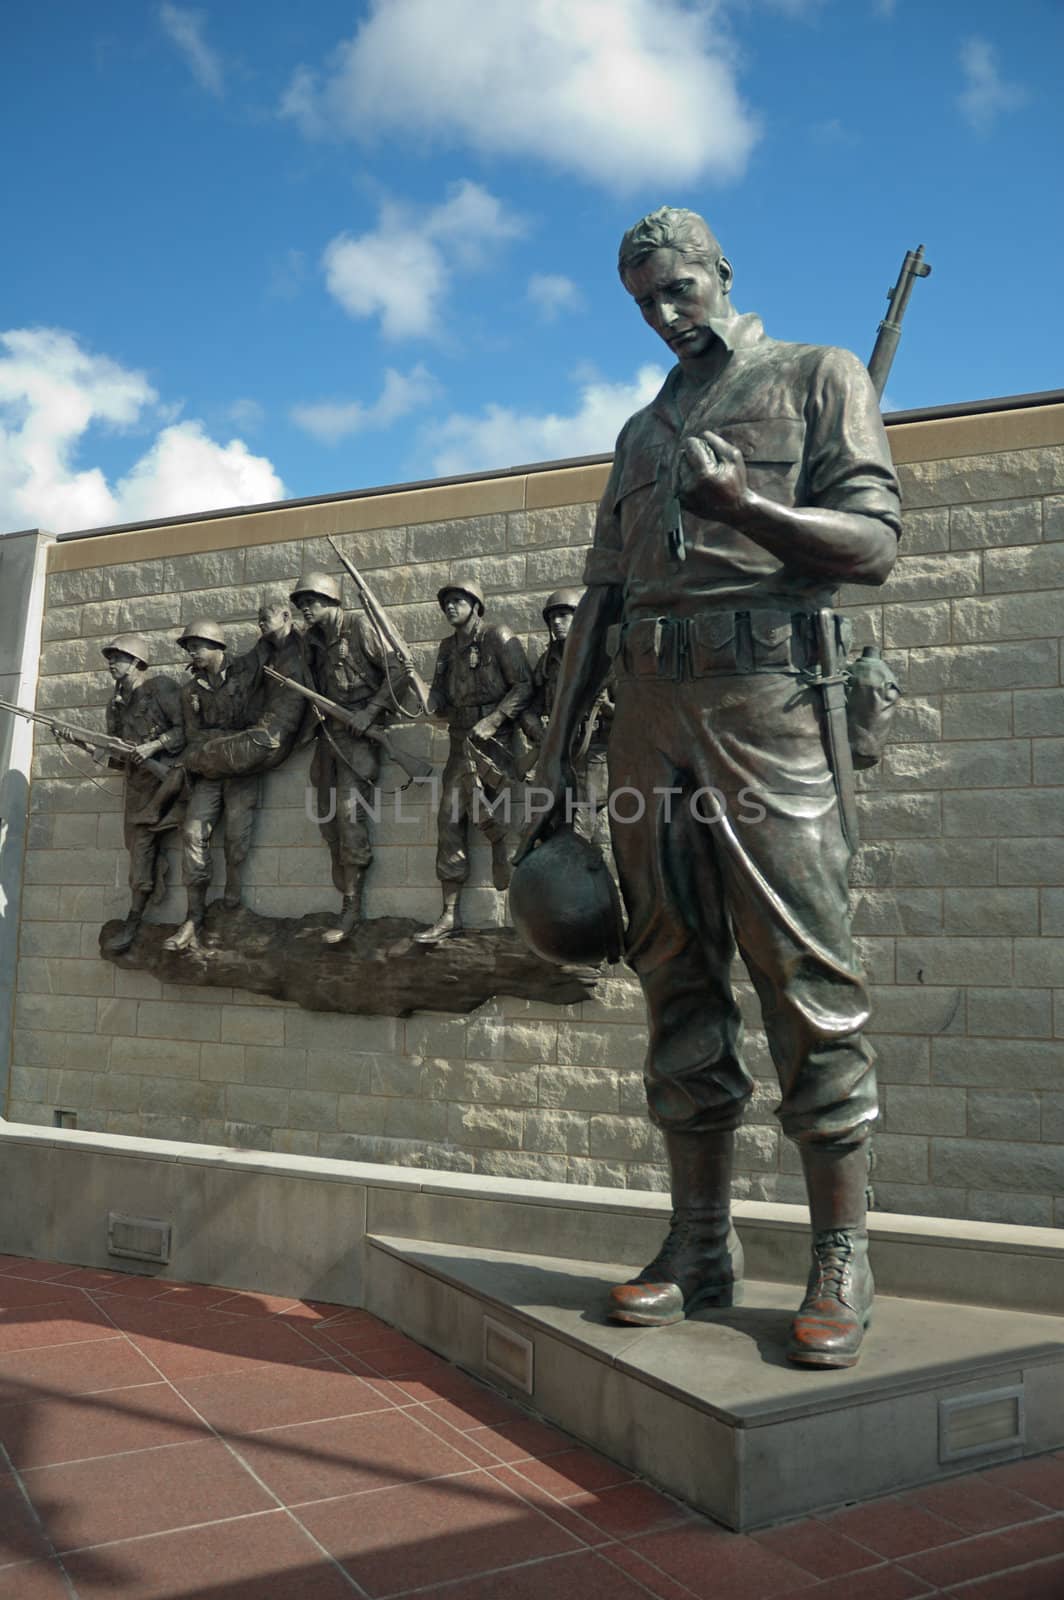 Korean War Memorial by rorem